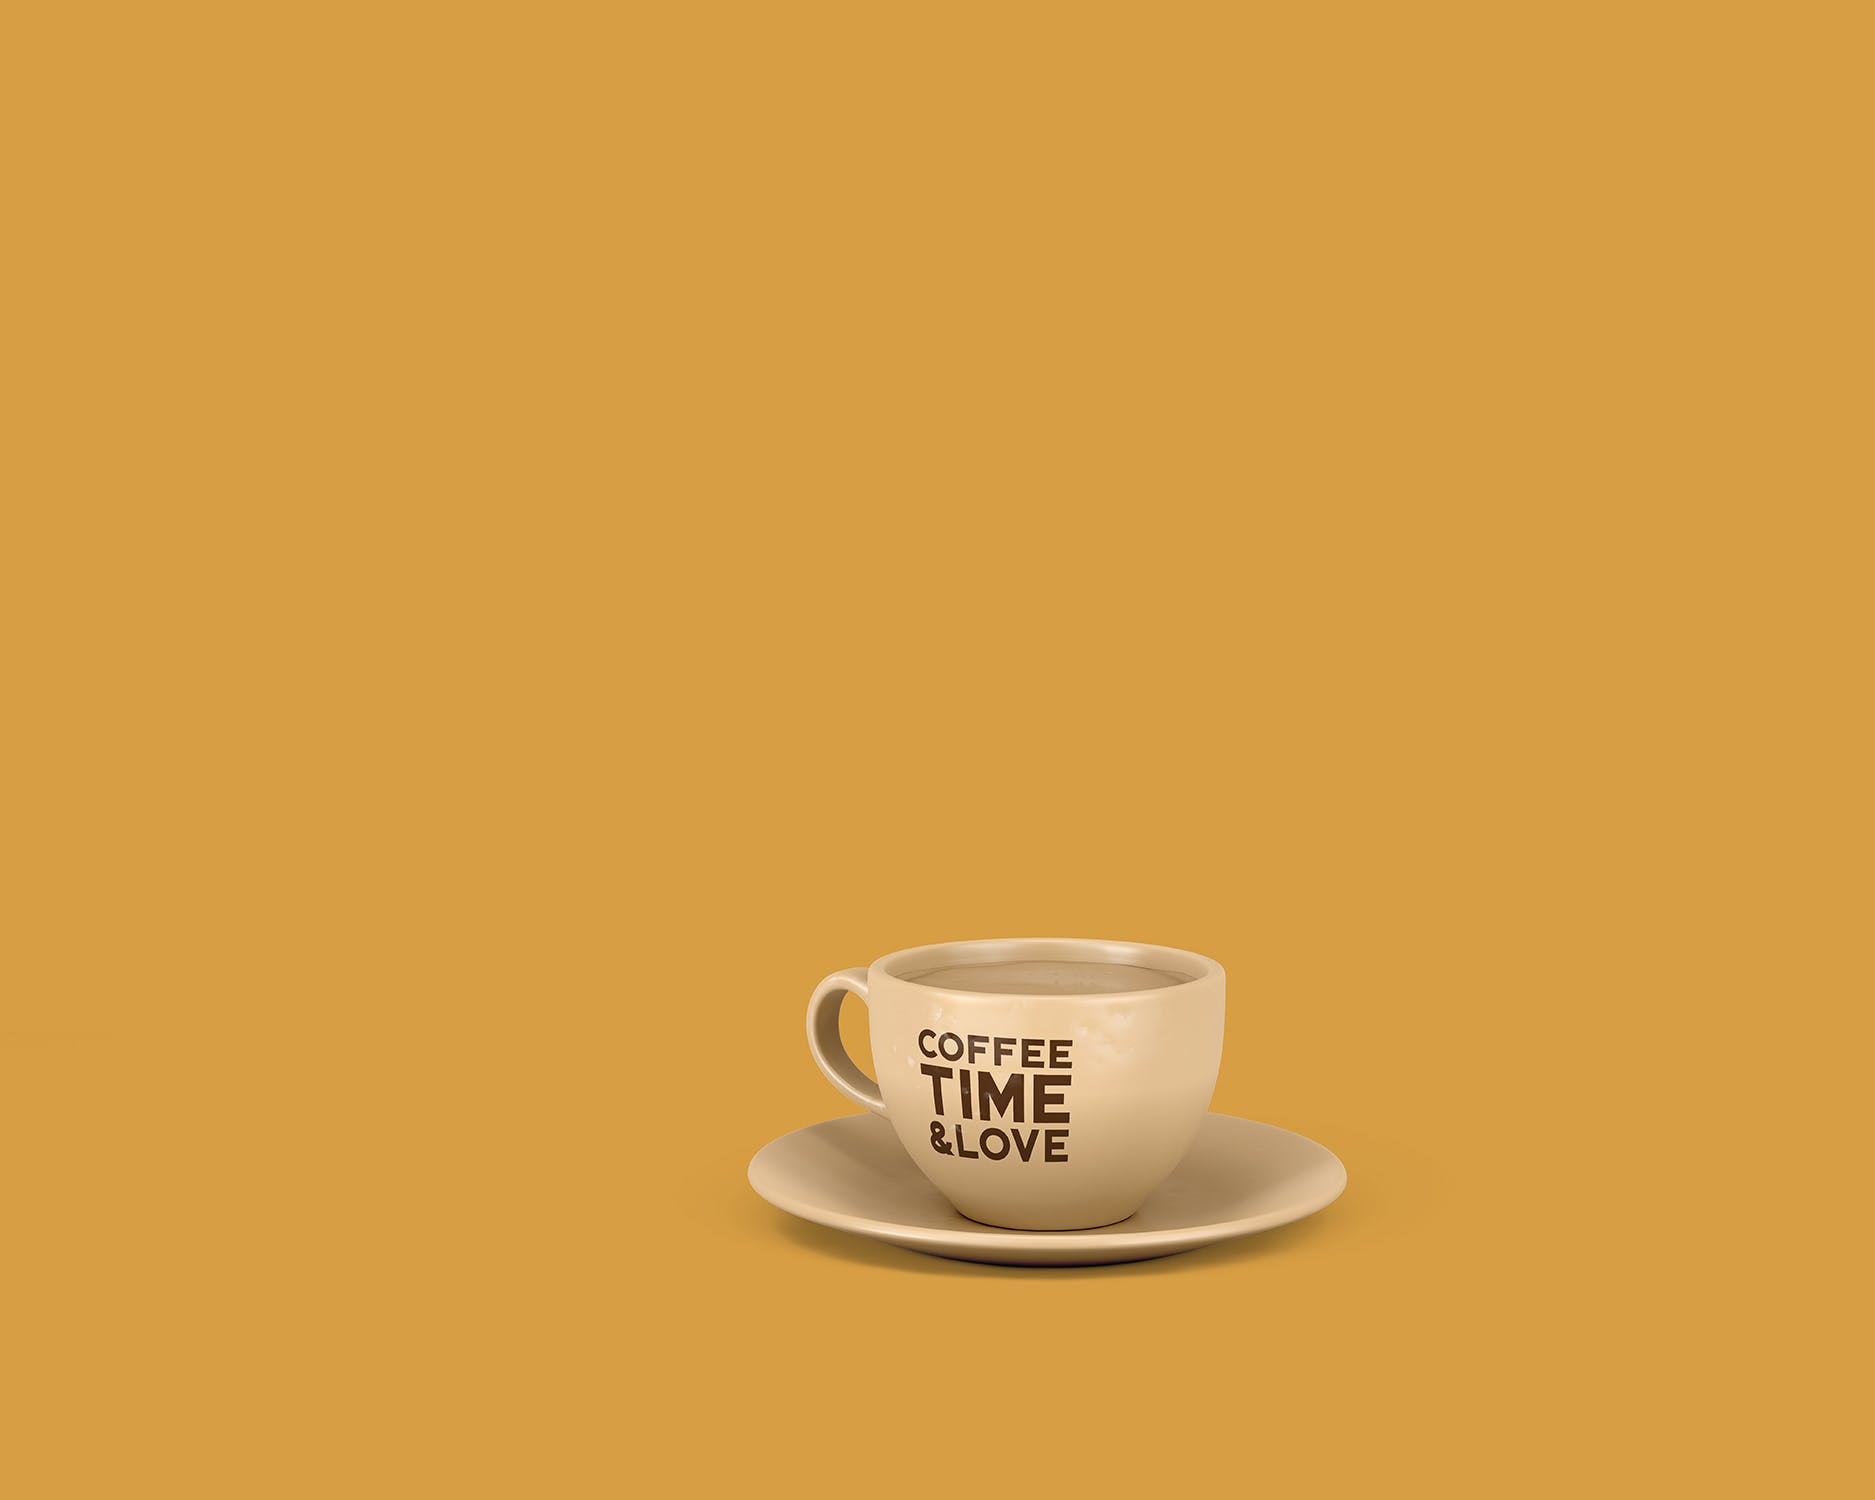 8个咖啡马克杯设计图第一素材精选 8 Coffee Cup Mockups插图(7)